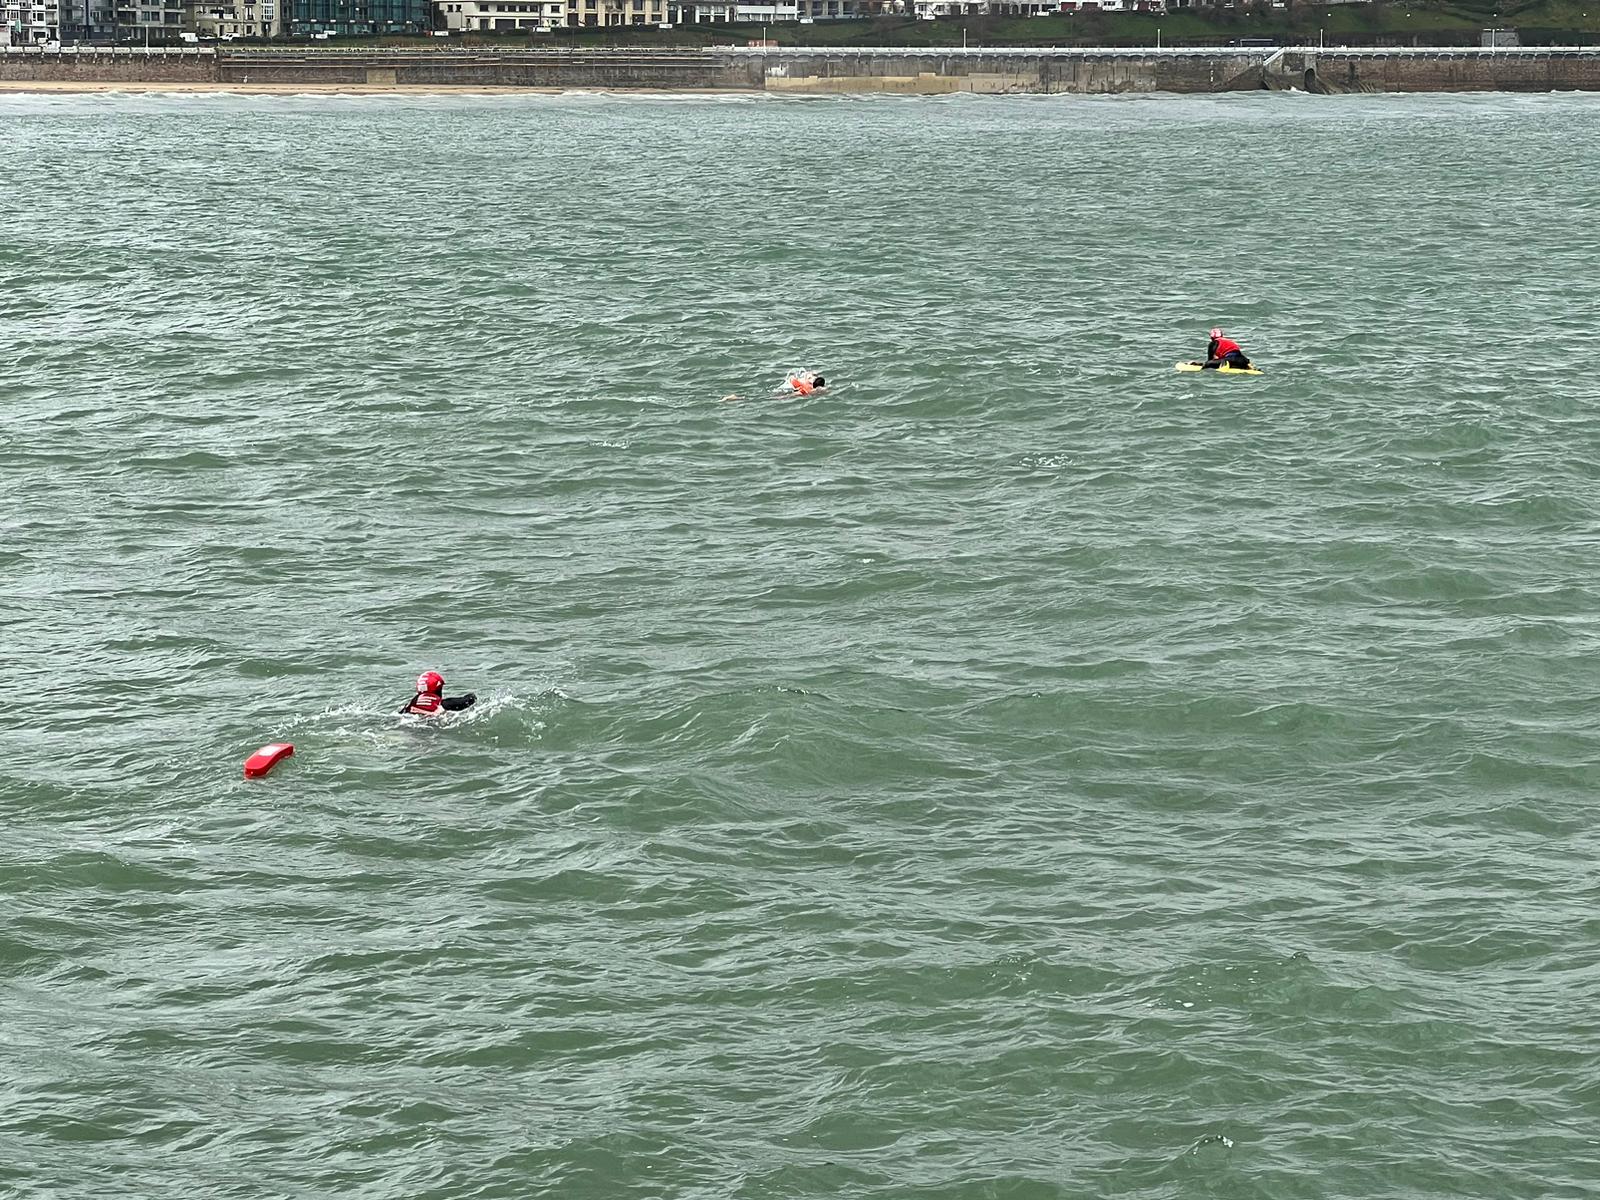 Nautico2 - Un nadador y dos ertzainas rescatados por los bomberos en la bahía de la Concha